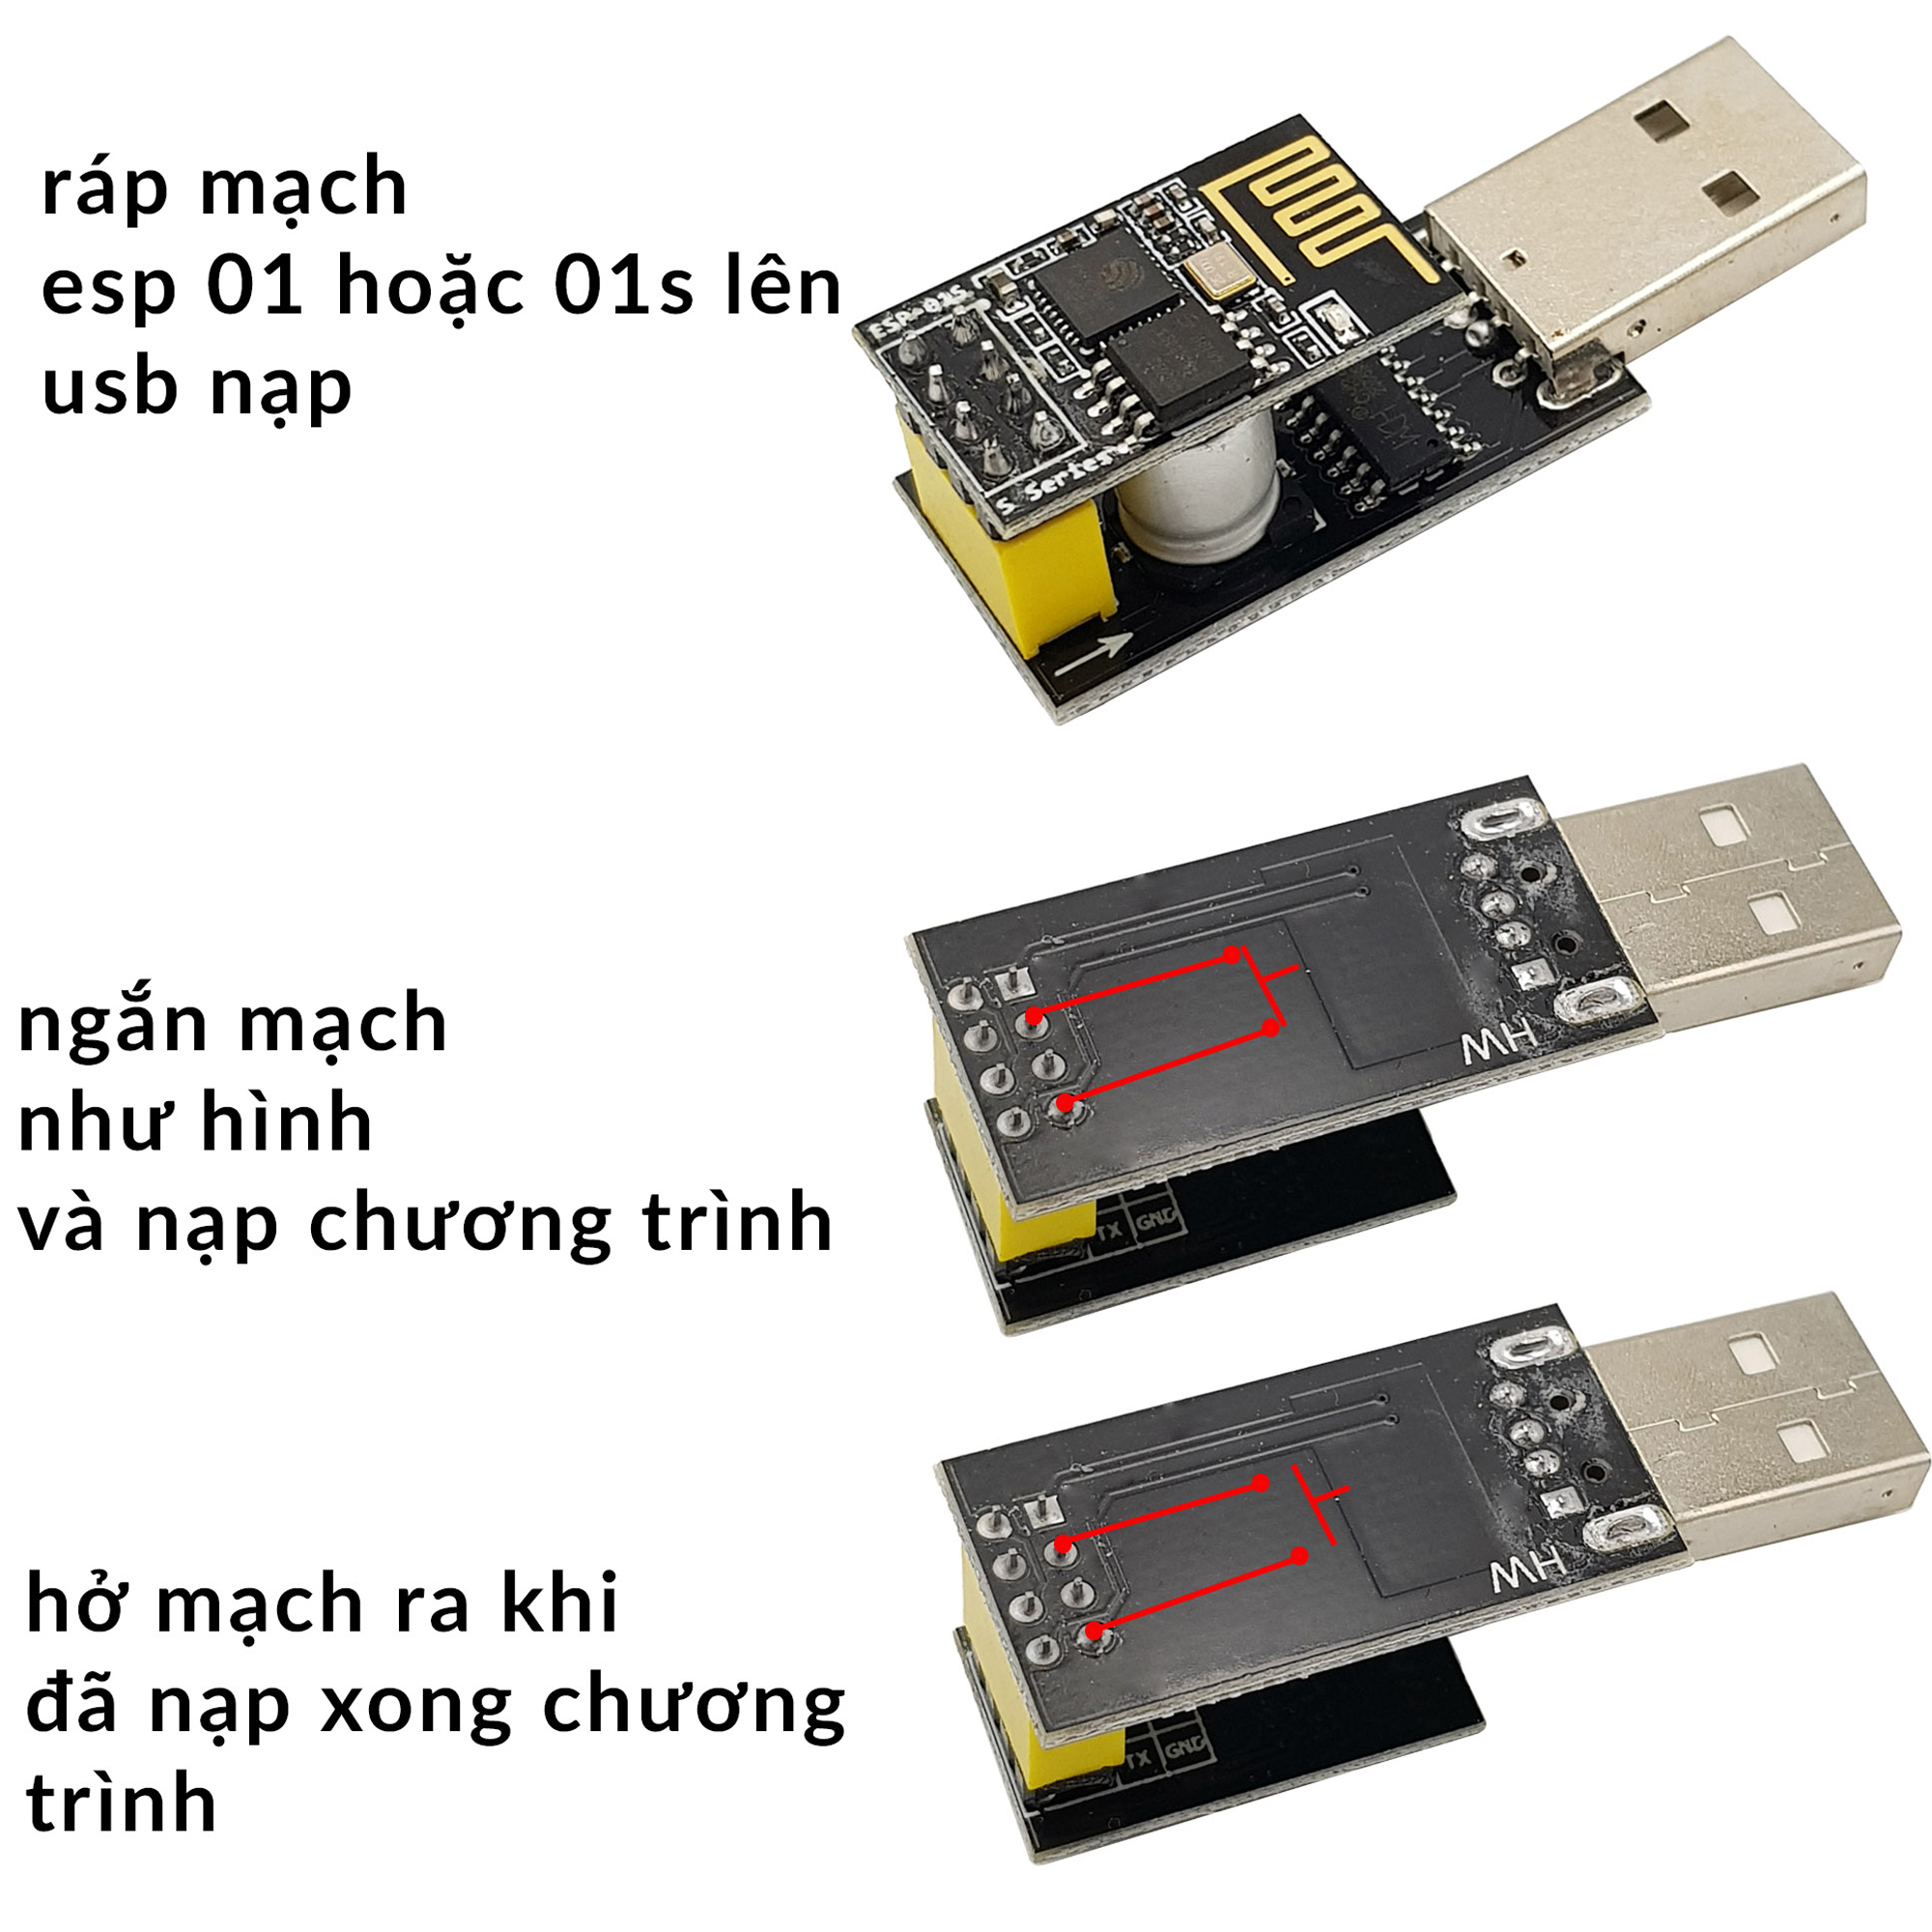 Hướng dẫn sử dụng USB Adapter Mạch Thu Phát Wifi ESP8266 Uart ESP-01